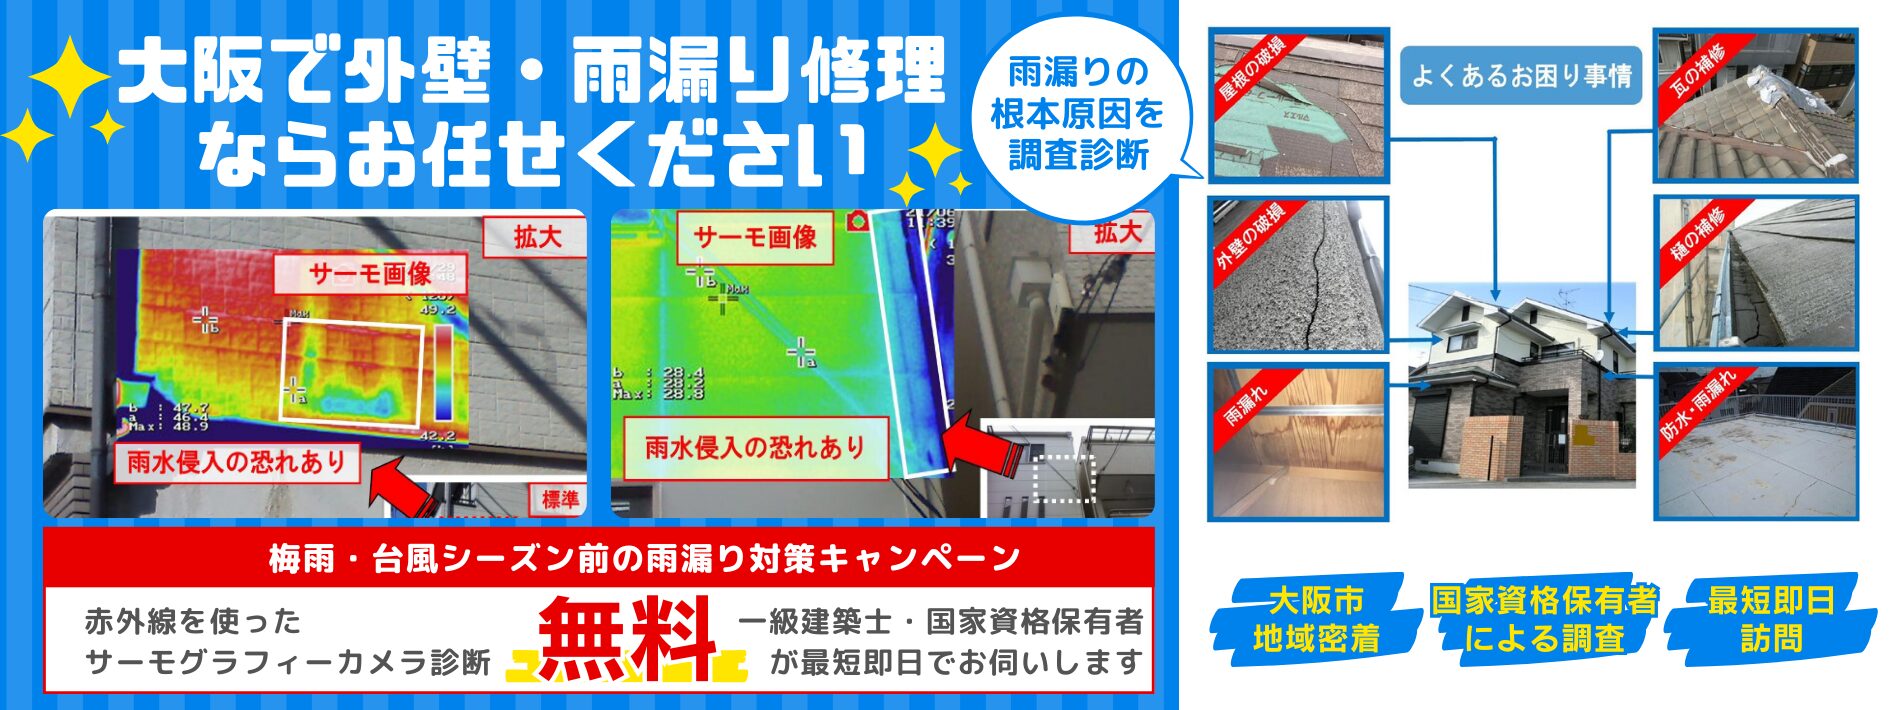 大阪で外壁・雨漏り修理ならお任せください